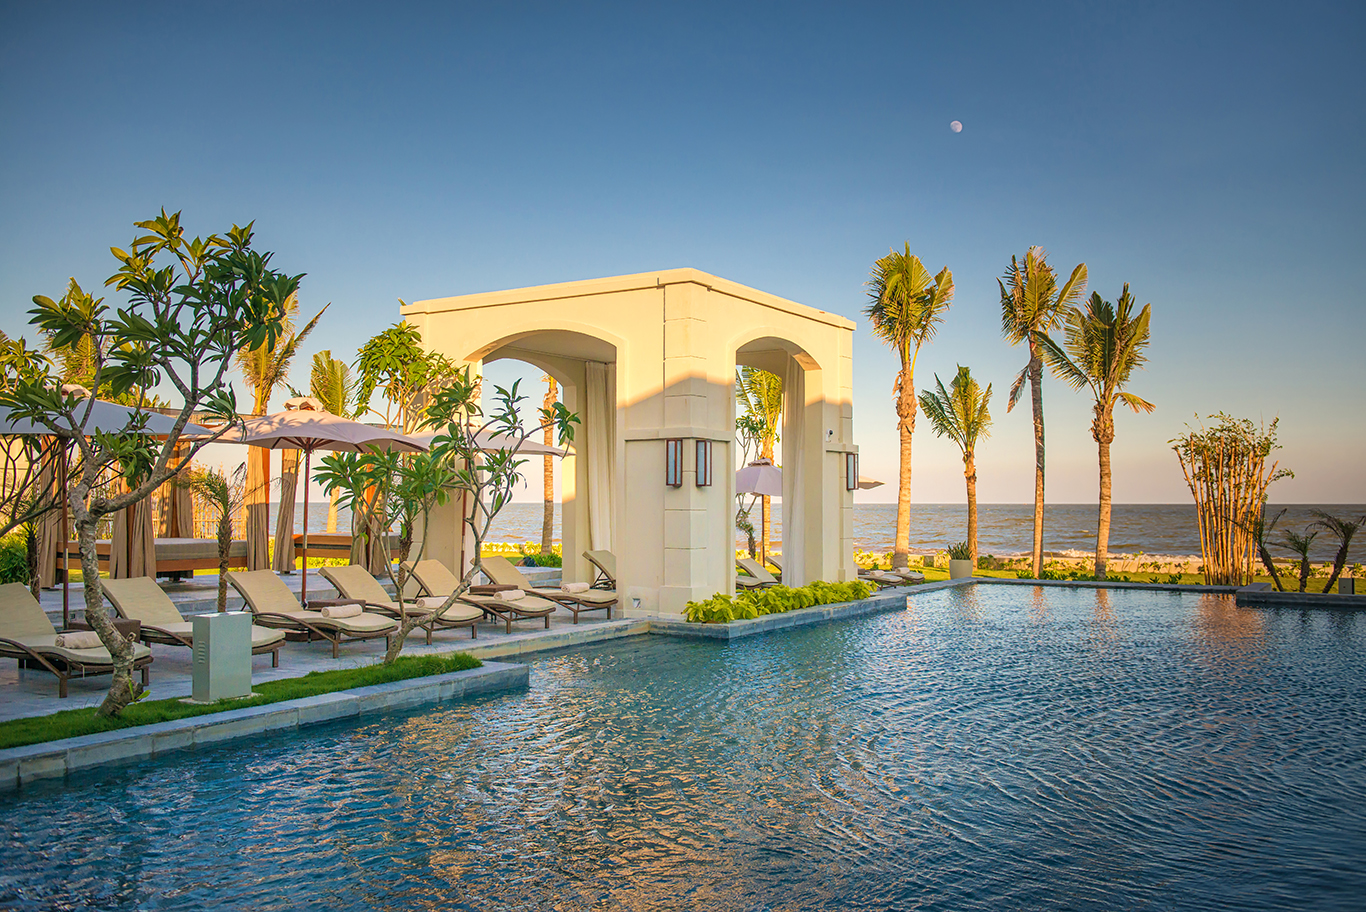 Trải nghiệm - Review - Đánh Giá FLC Luxury Resort Sầm Sơn - mới ...